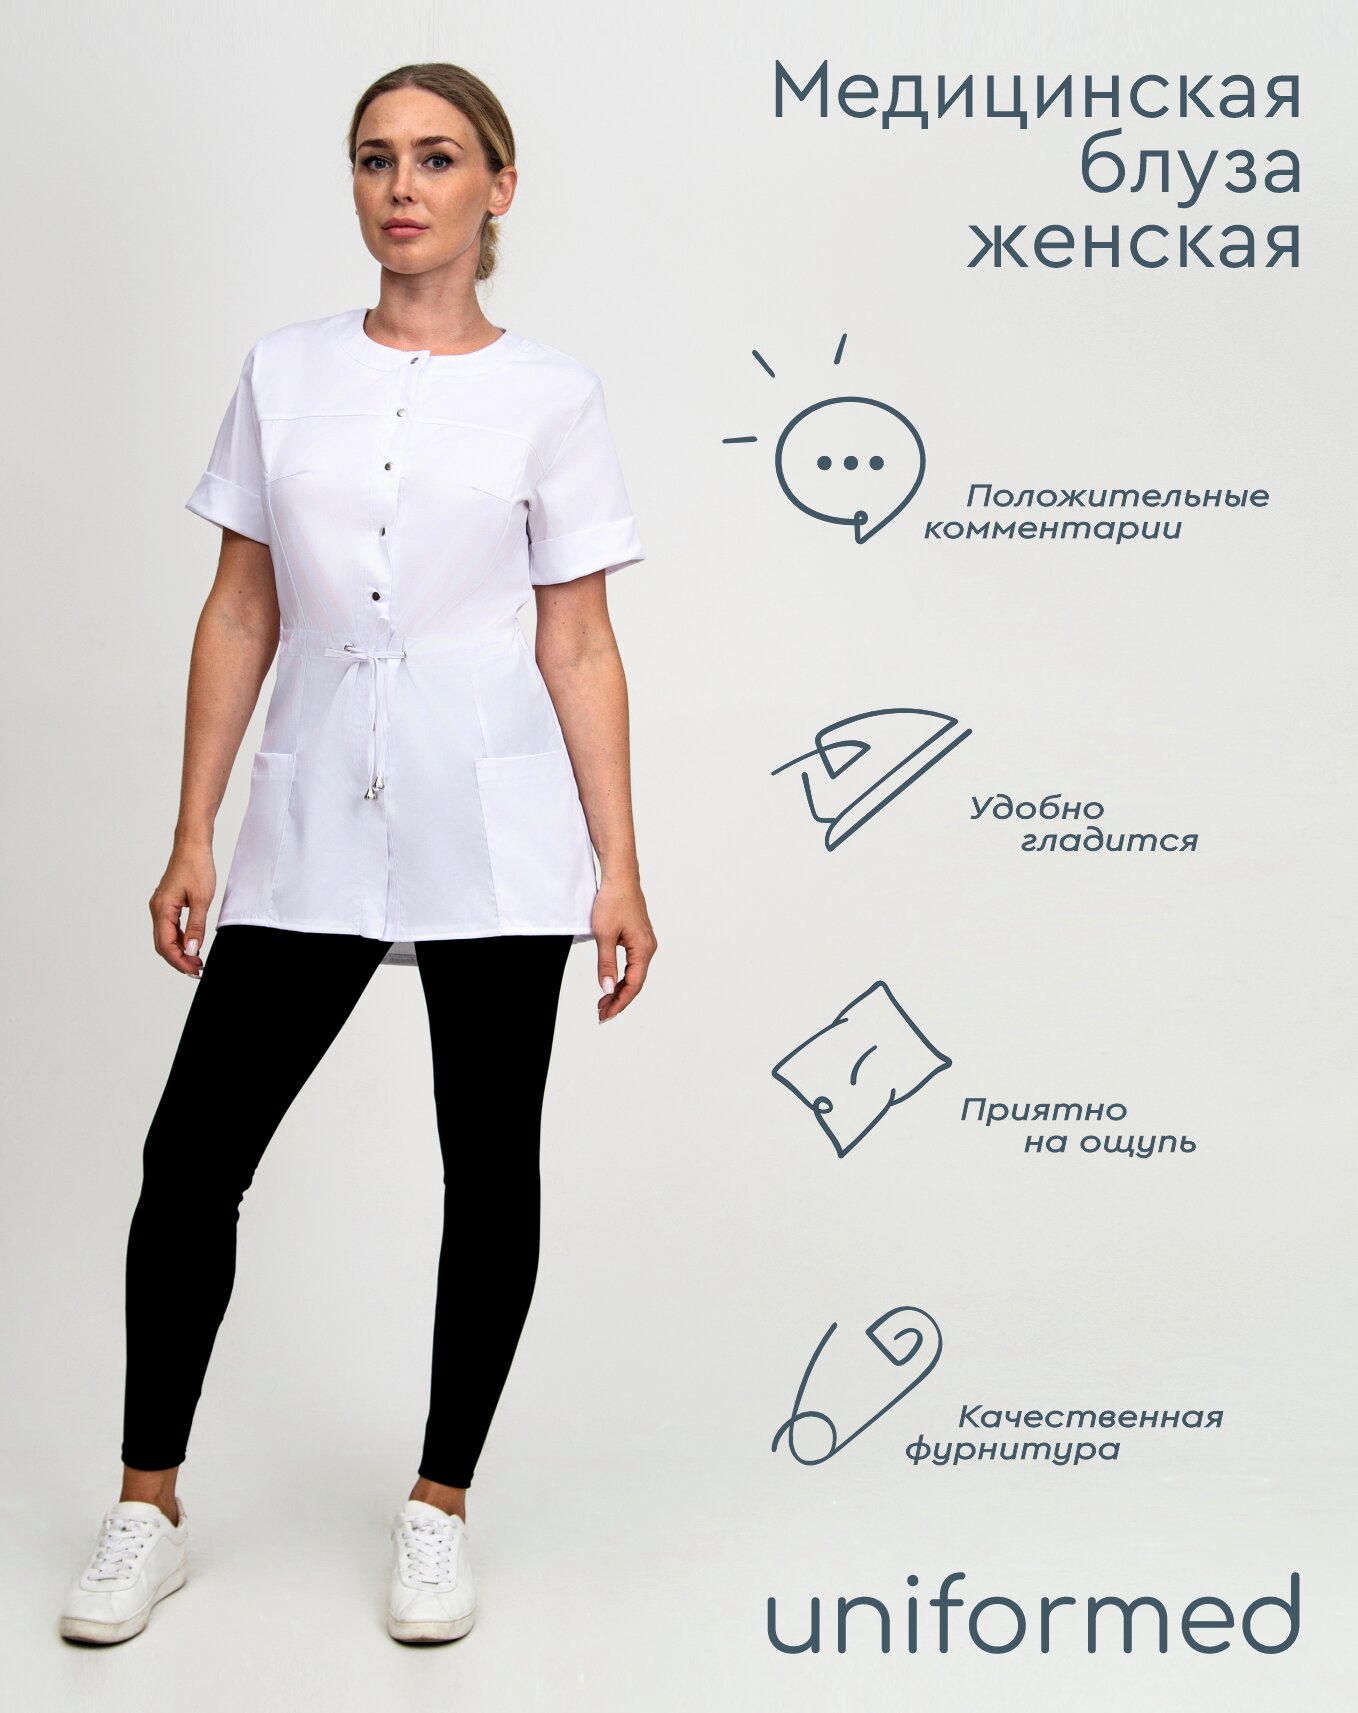 Медицинская женская блуза 404.4.6 Uniformed, ткань сатори стрейч, рукав короткий, цвет белый, рост 170-176, размер 54